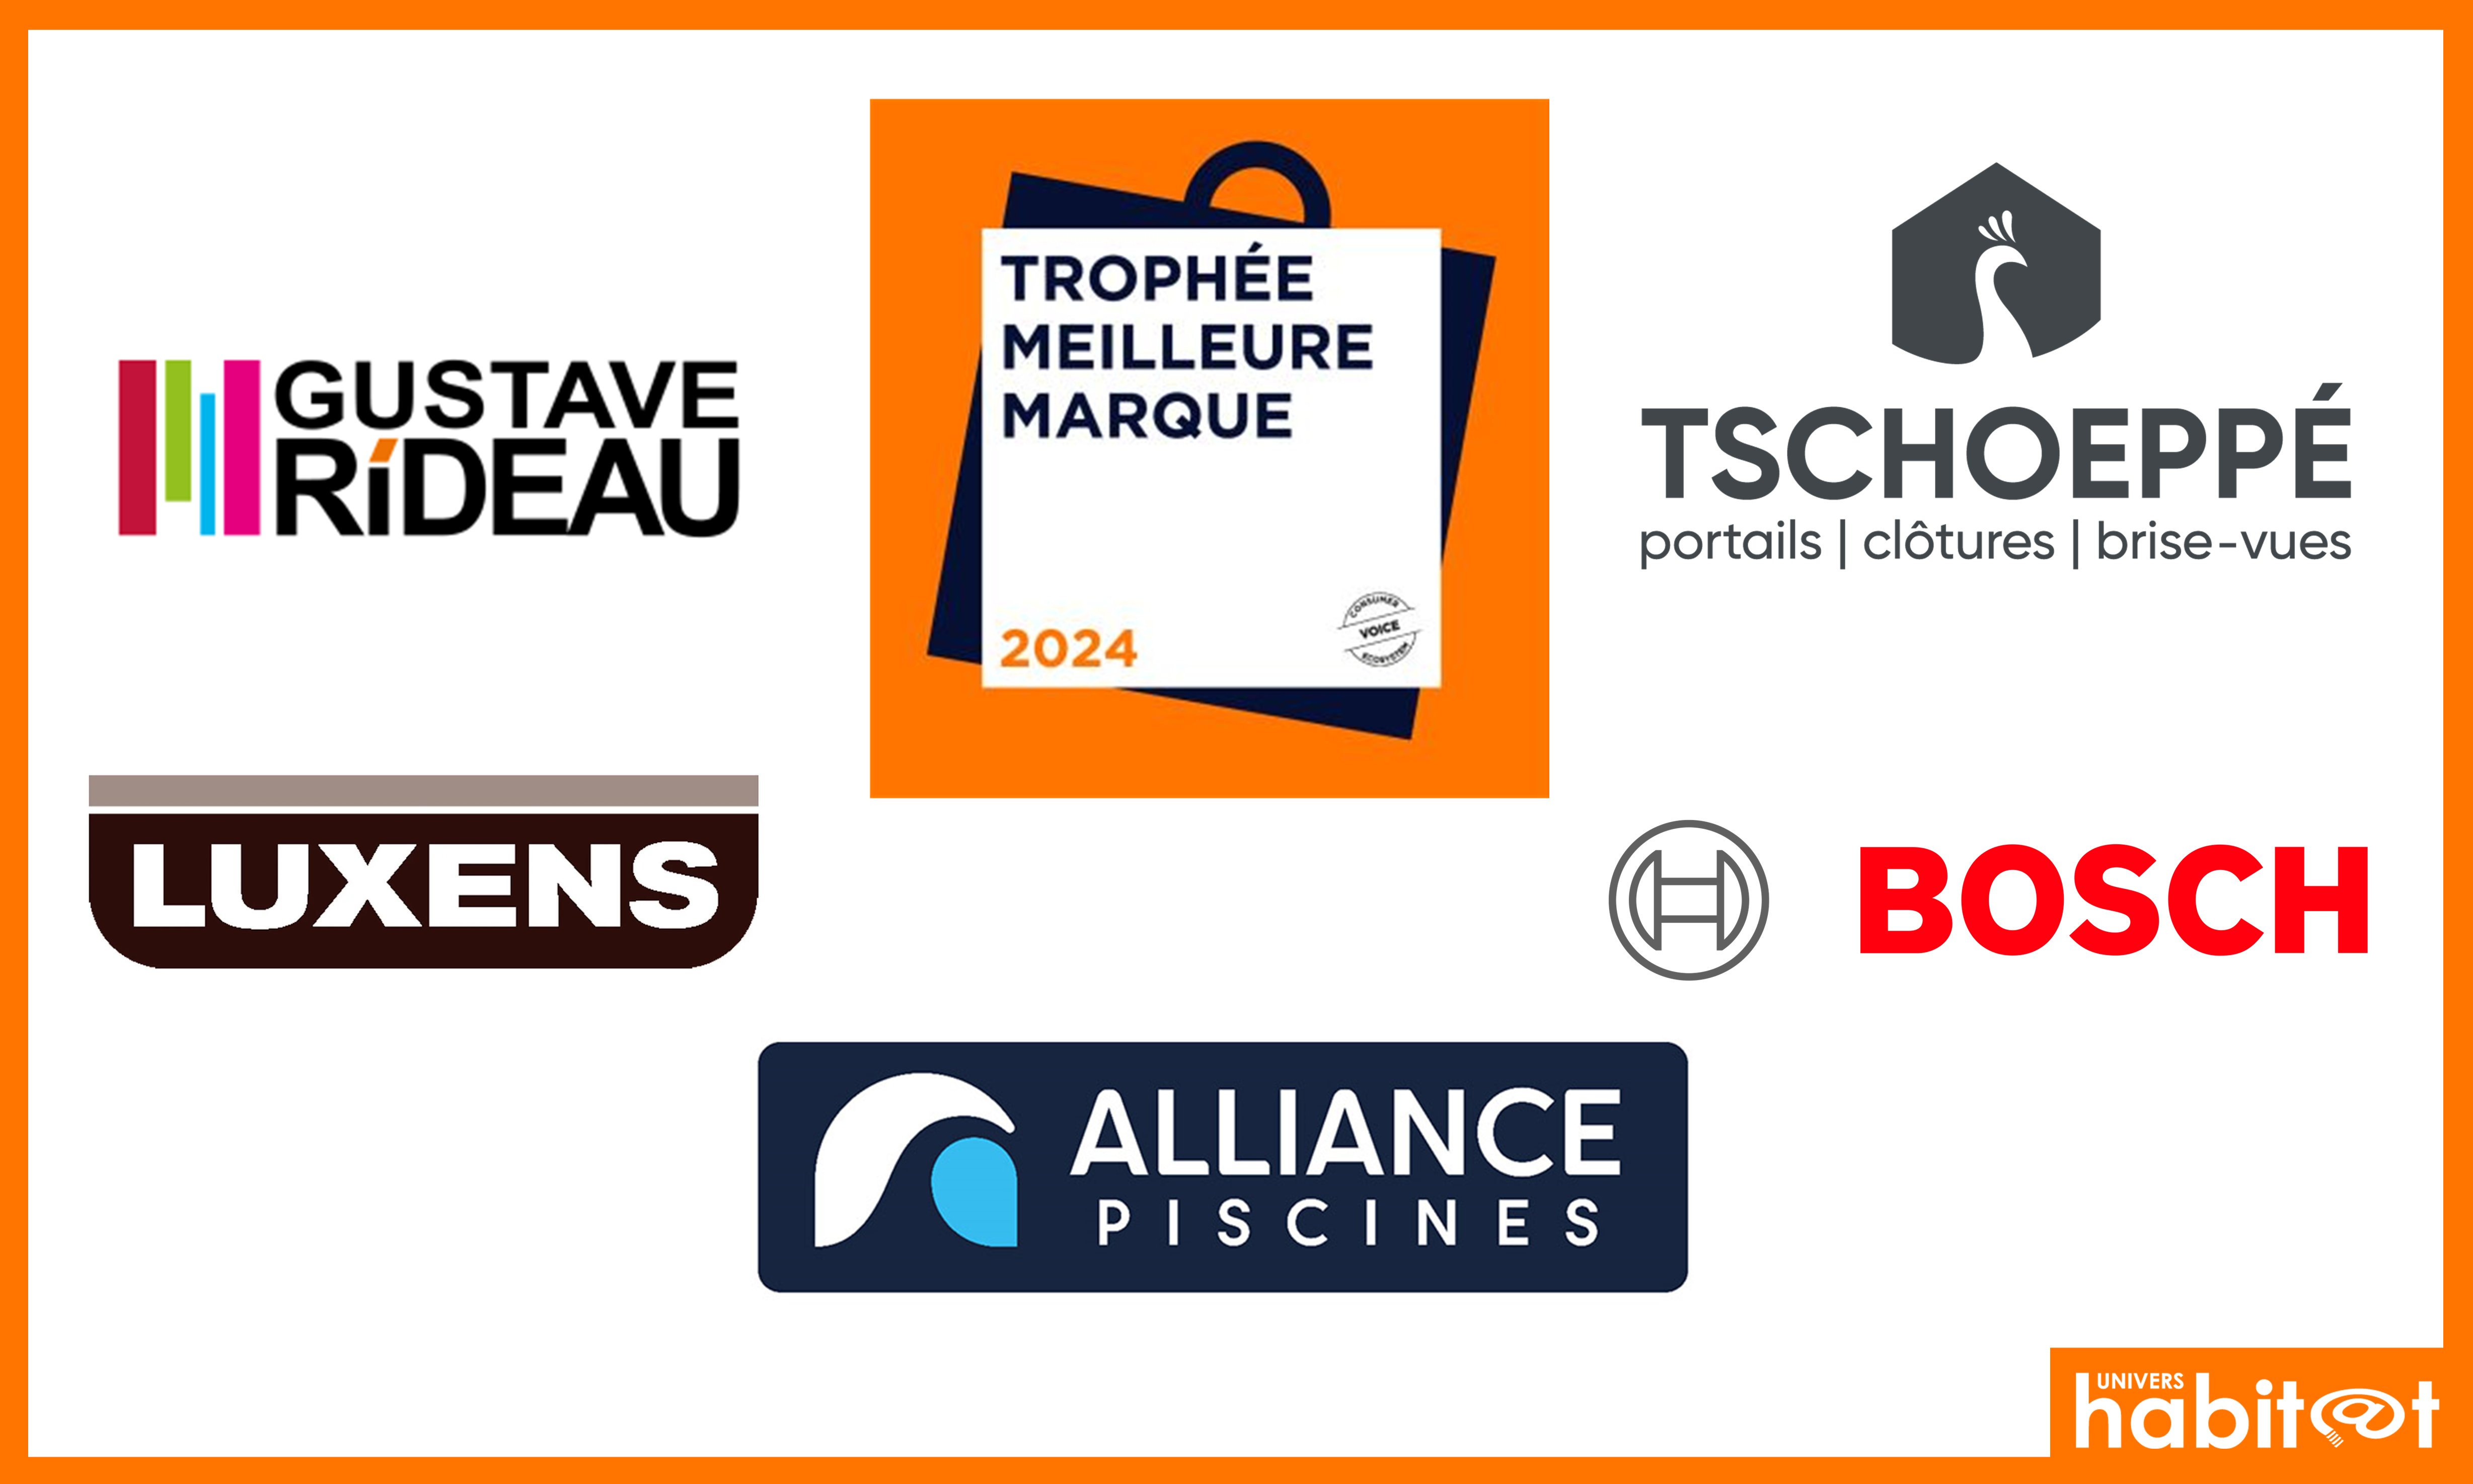 Bosch, Luxens, Alliance Piscines, Gustave Rideau et Tschoeppe distinguées par le « Trophée Meilleure Marque 2024 »